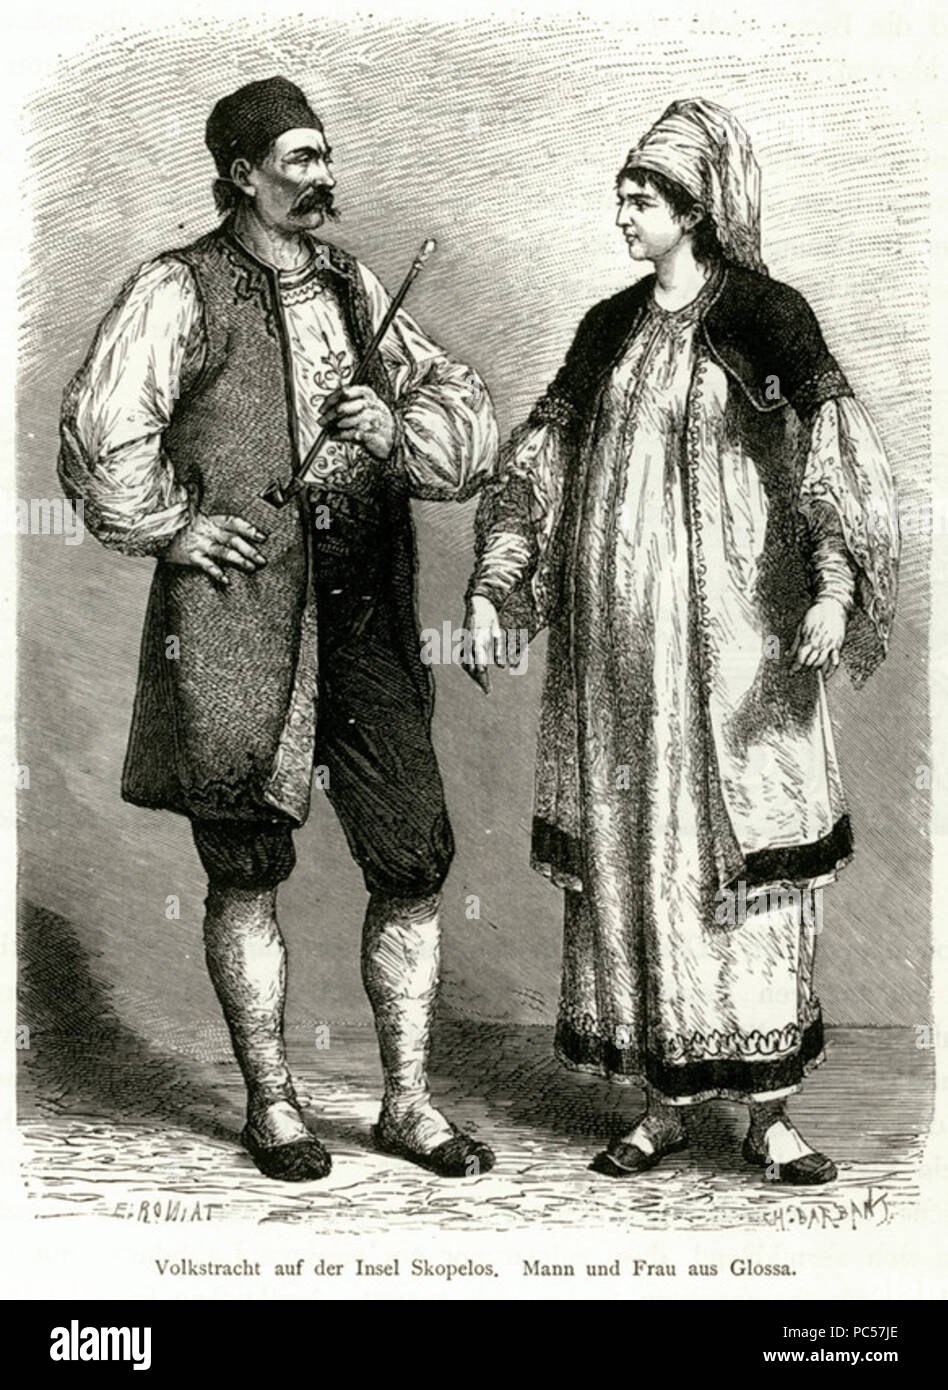 636 Volkstracht auf der Insel Skopelos Mann und Frau aus Glossa - Schweiger Lerchenfeld Amand (freiherr Von) - 1887 Stock Photo